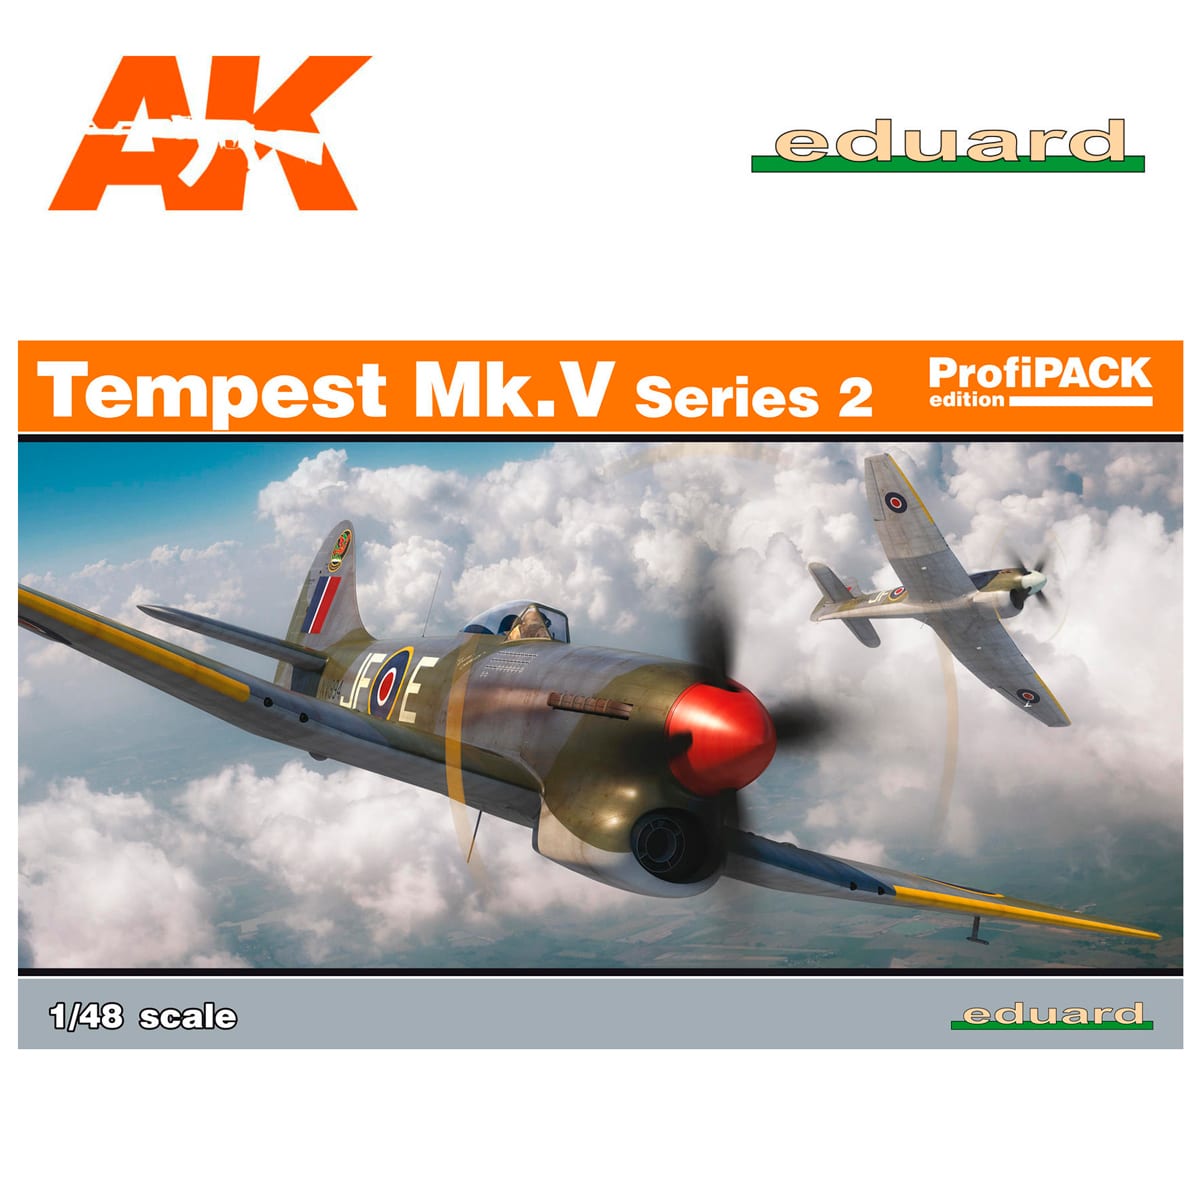 Tempest Mk. V series 2 1/48